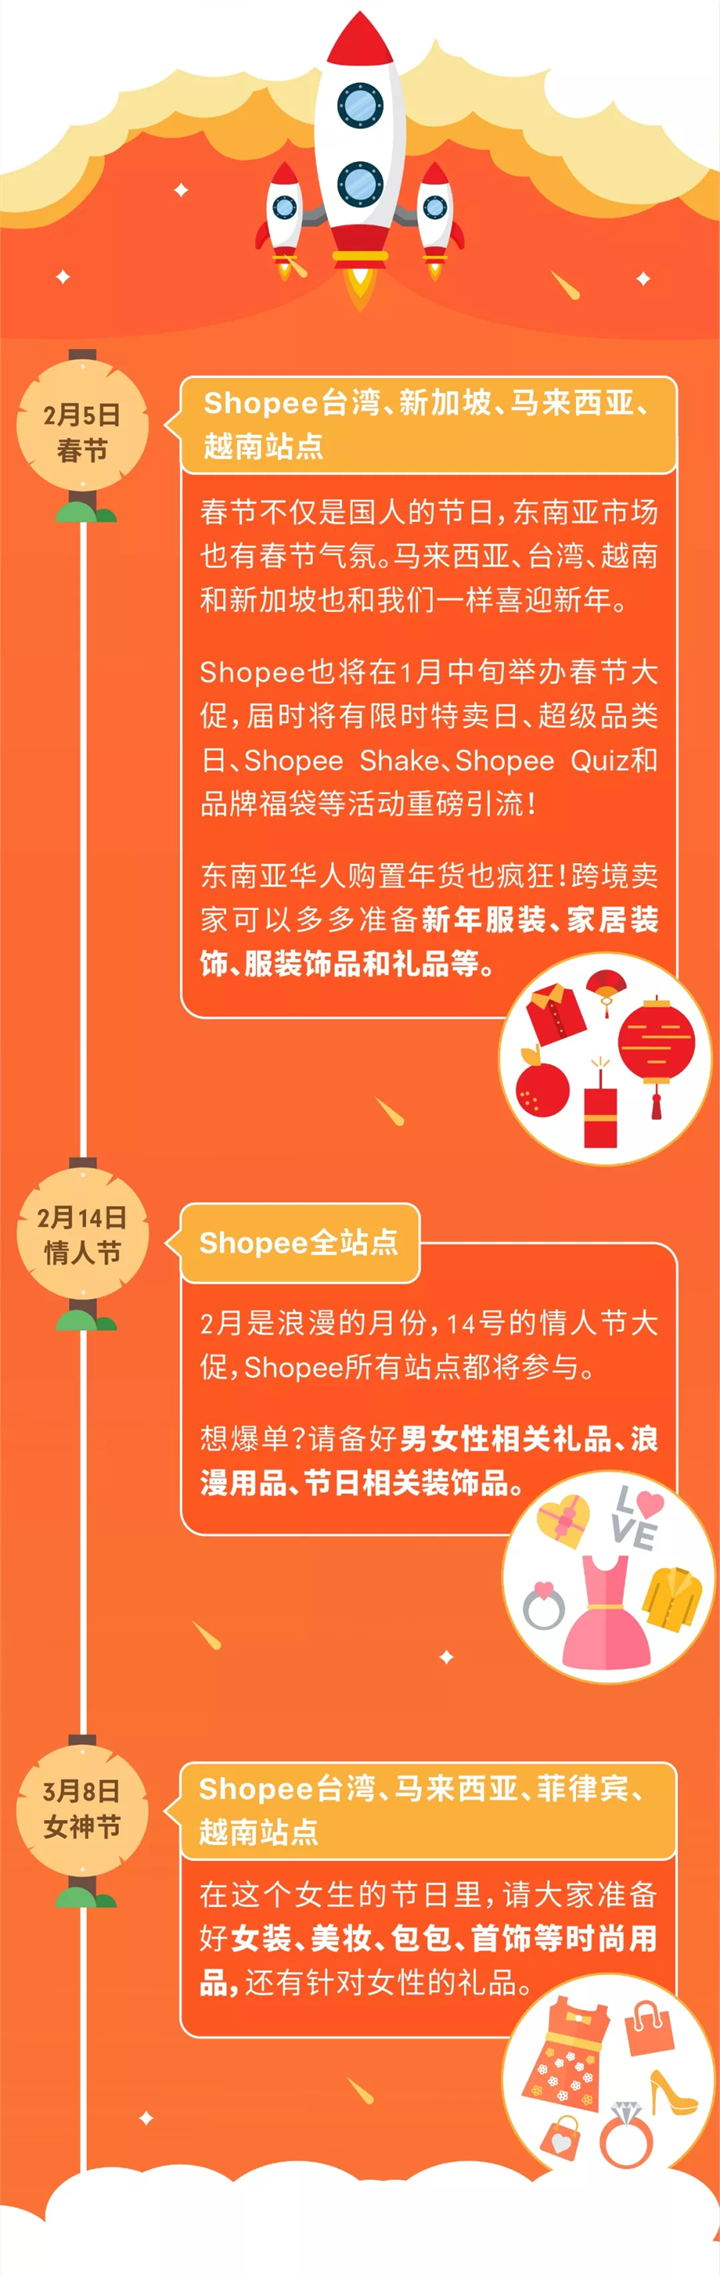 2019年Shopee大促日历时间表！